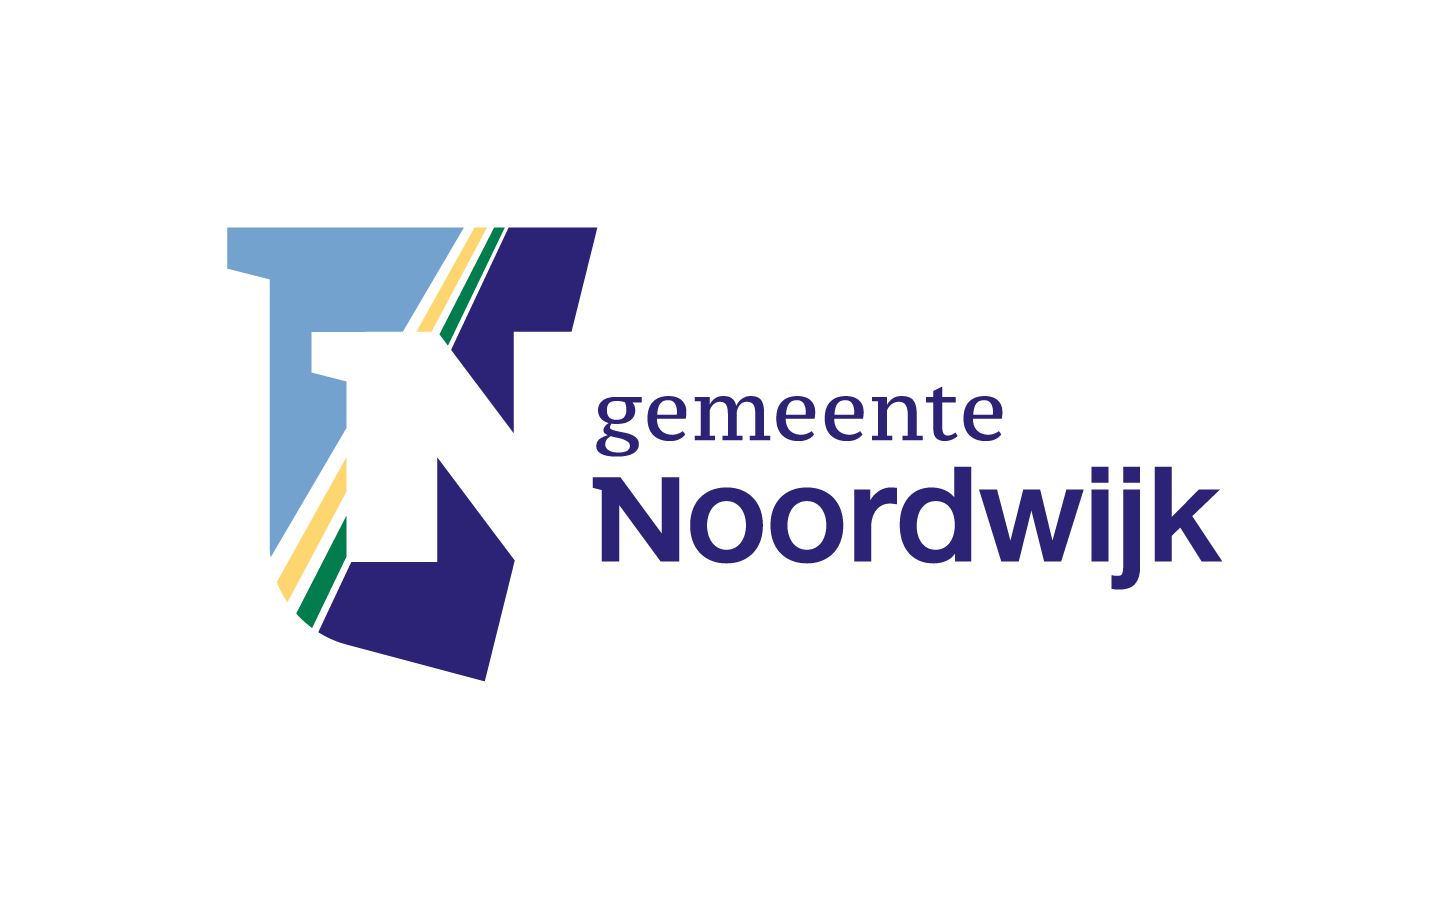 Digital Asset Management - Beeldbank - Gemeente Noordwijk